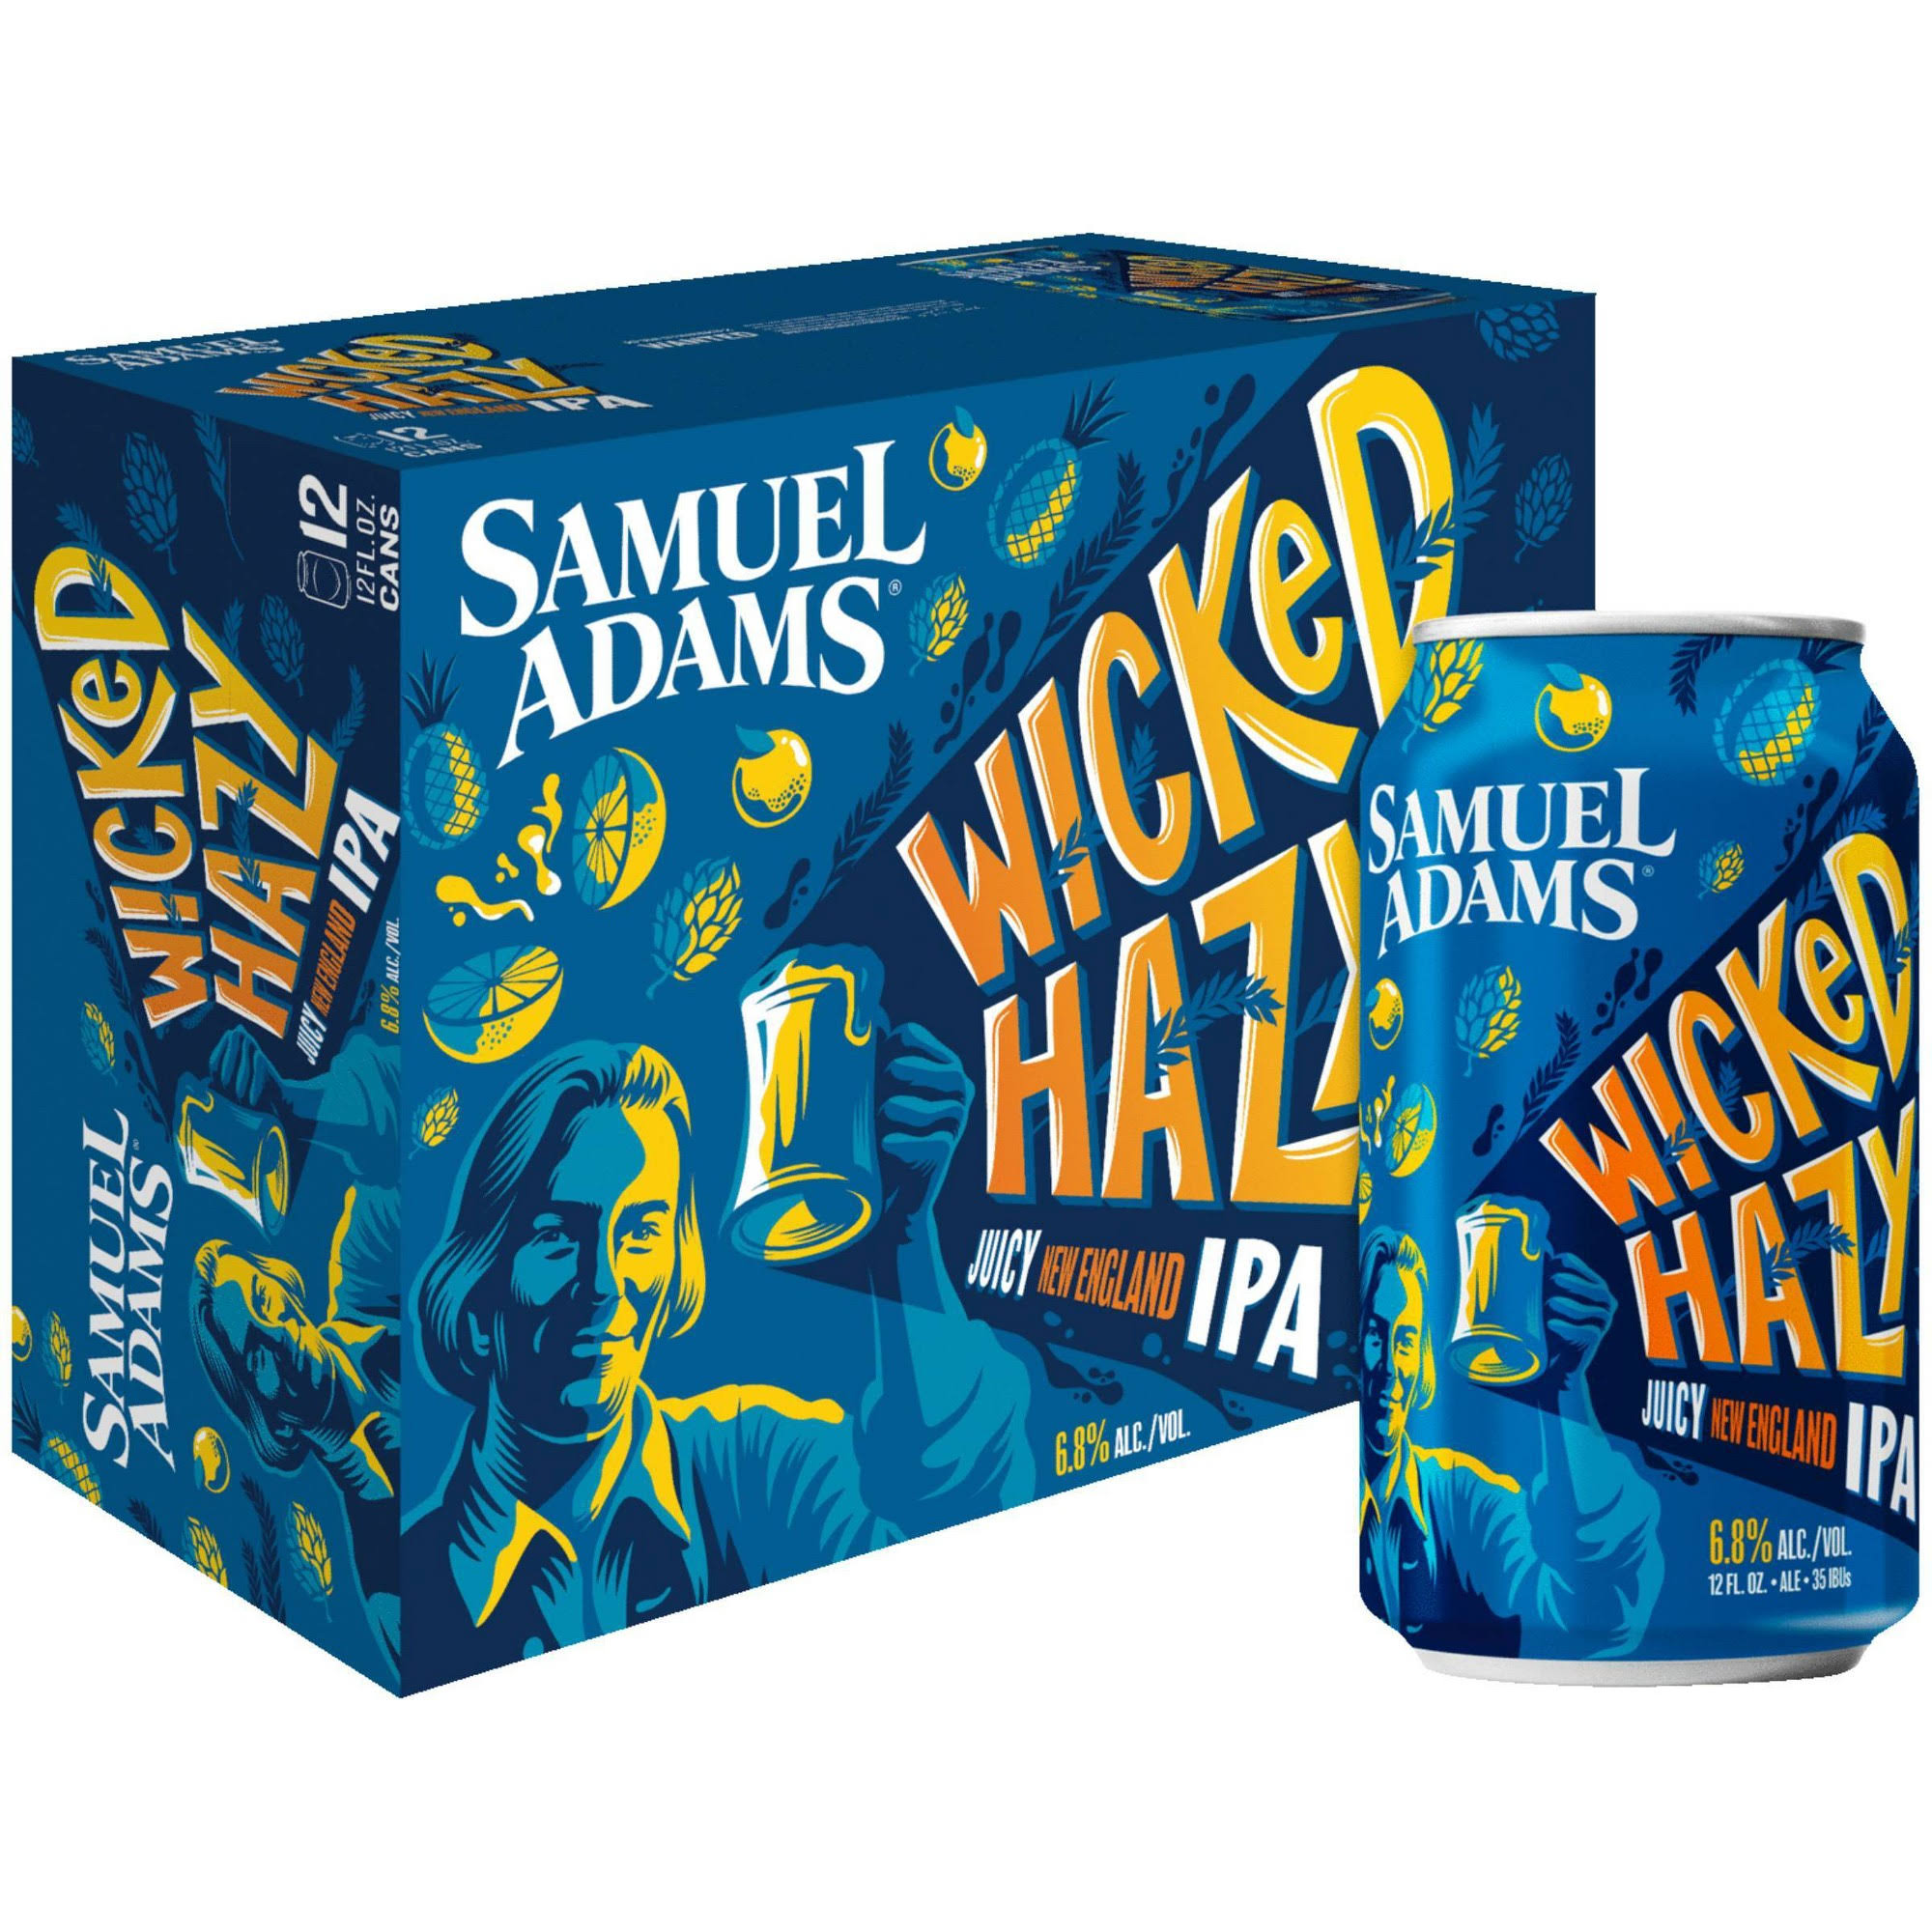 Samuel Adams Beer, IPA, Juicy New England, Wicked Hazy - 12 pack, 12 fl oz cans